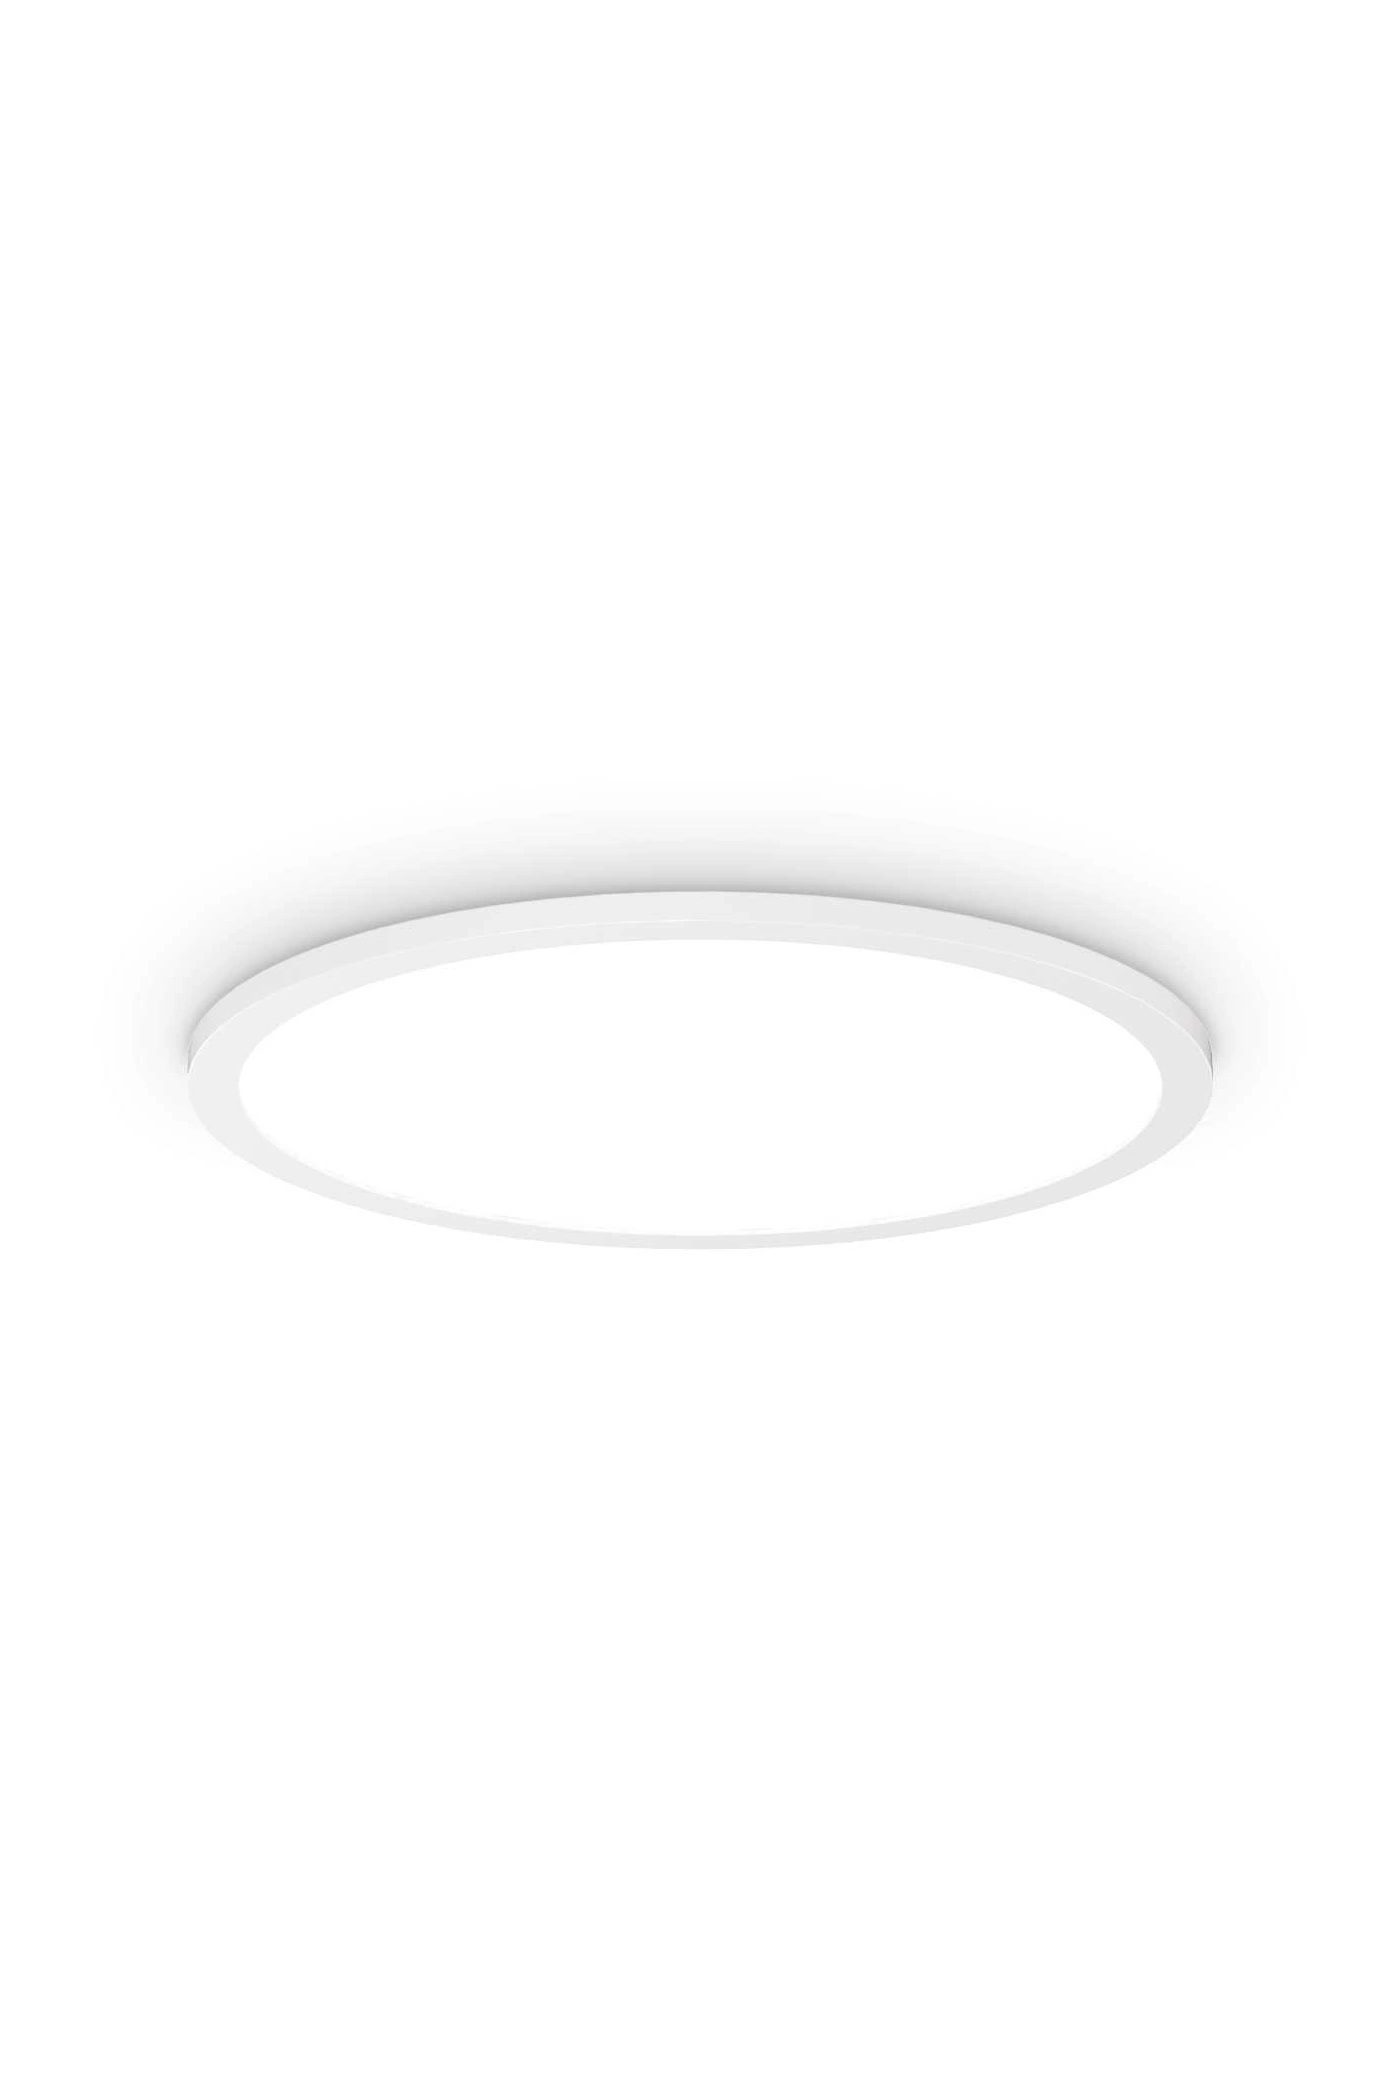   
                        
                        Светильник потолочный IDEAL LUX (Италия) 10278    
                         в стиле Модерн.  
                        Тип источника света: встроенный led-модуль, несъемный.                         Форма: Круг.                         Цвета плафонов и подвесок: Белый.                         Материал: Алюминий, Пластик.                          фото 1